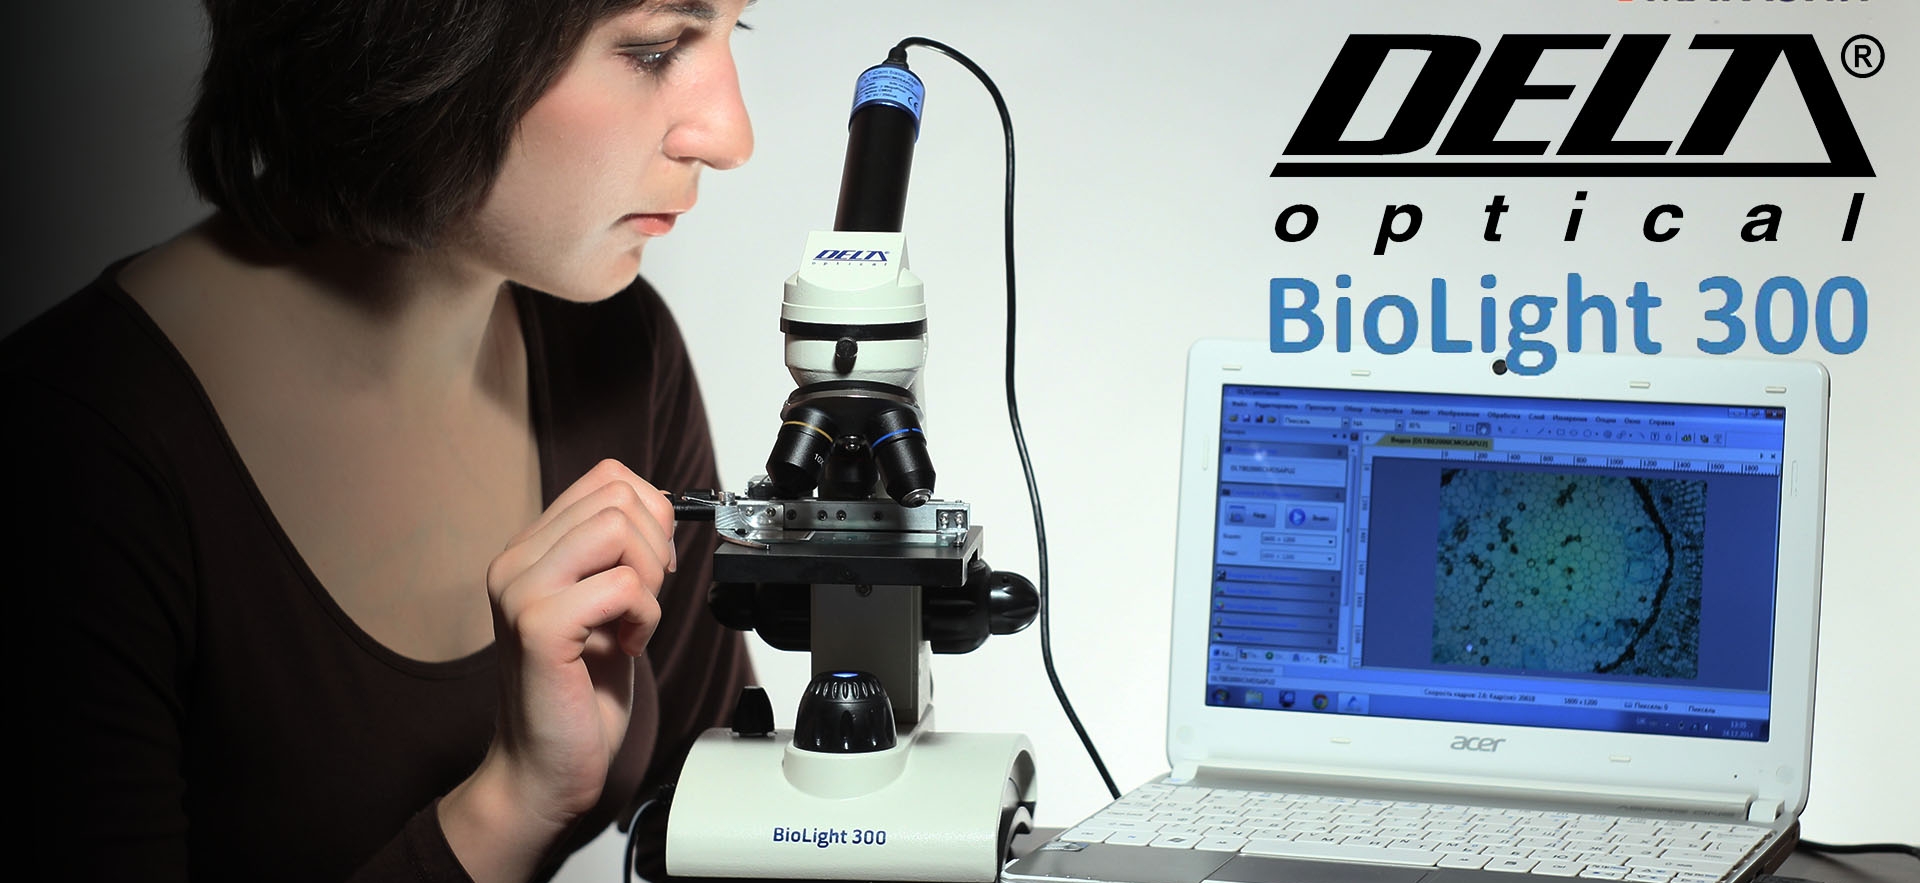 Видео-обзор микроскопа Delta Optical BioLight 300